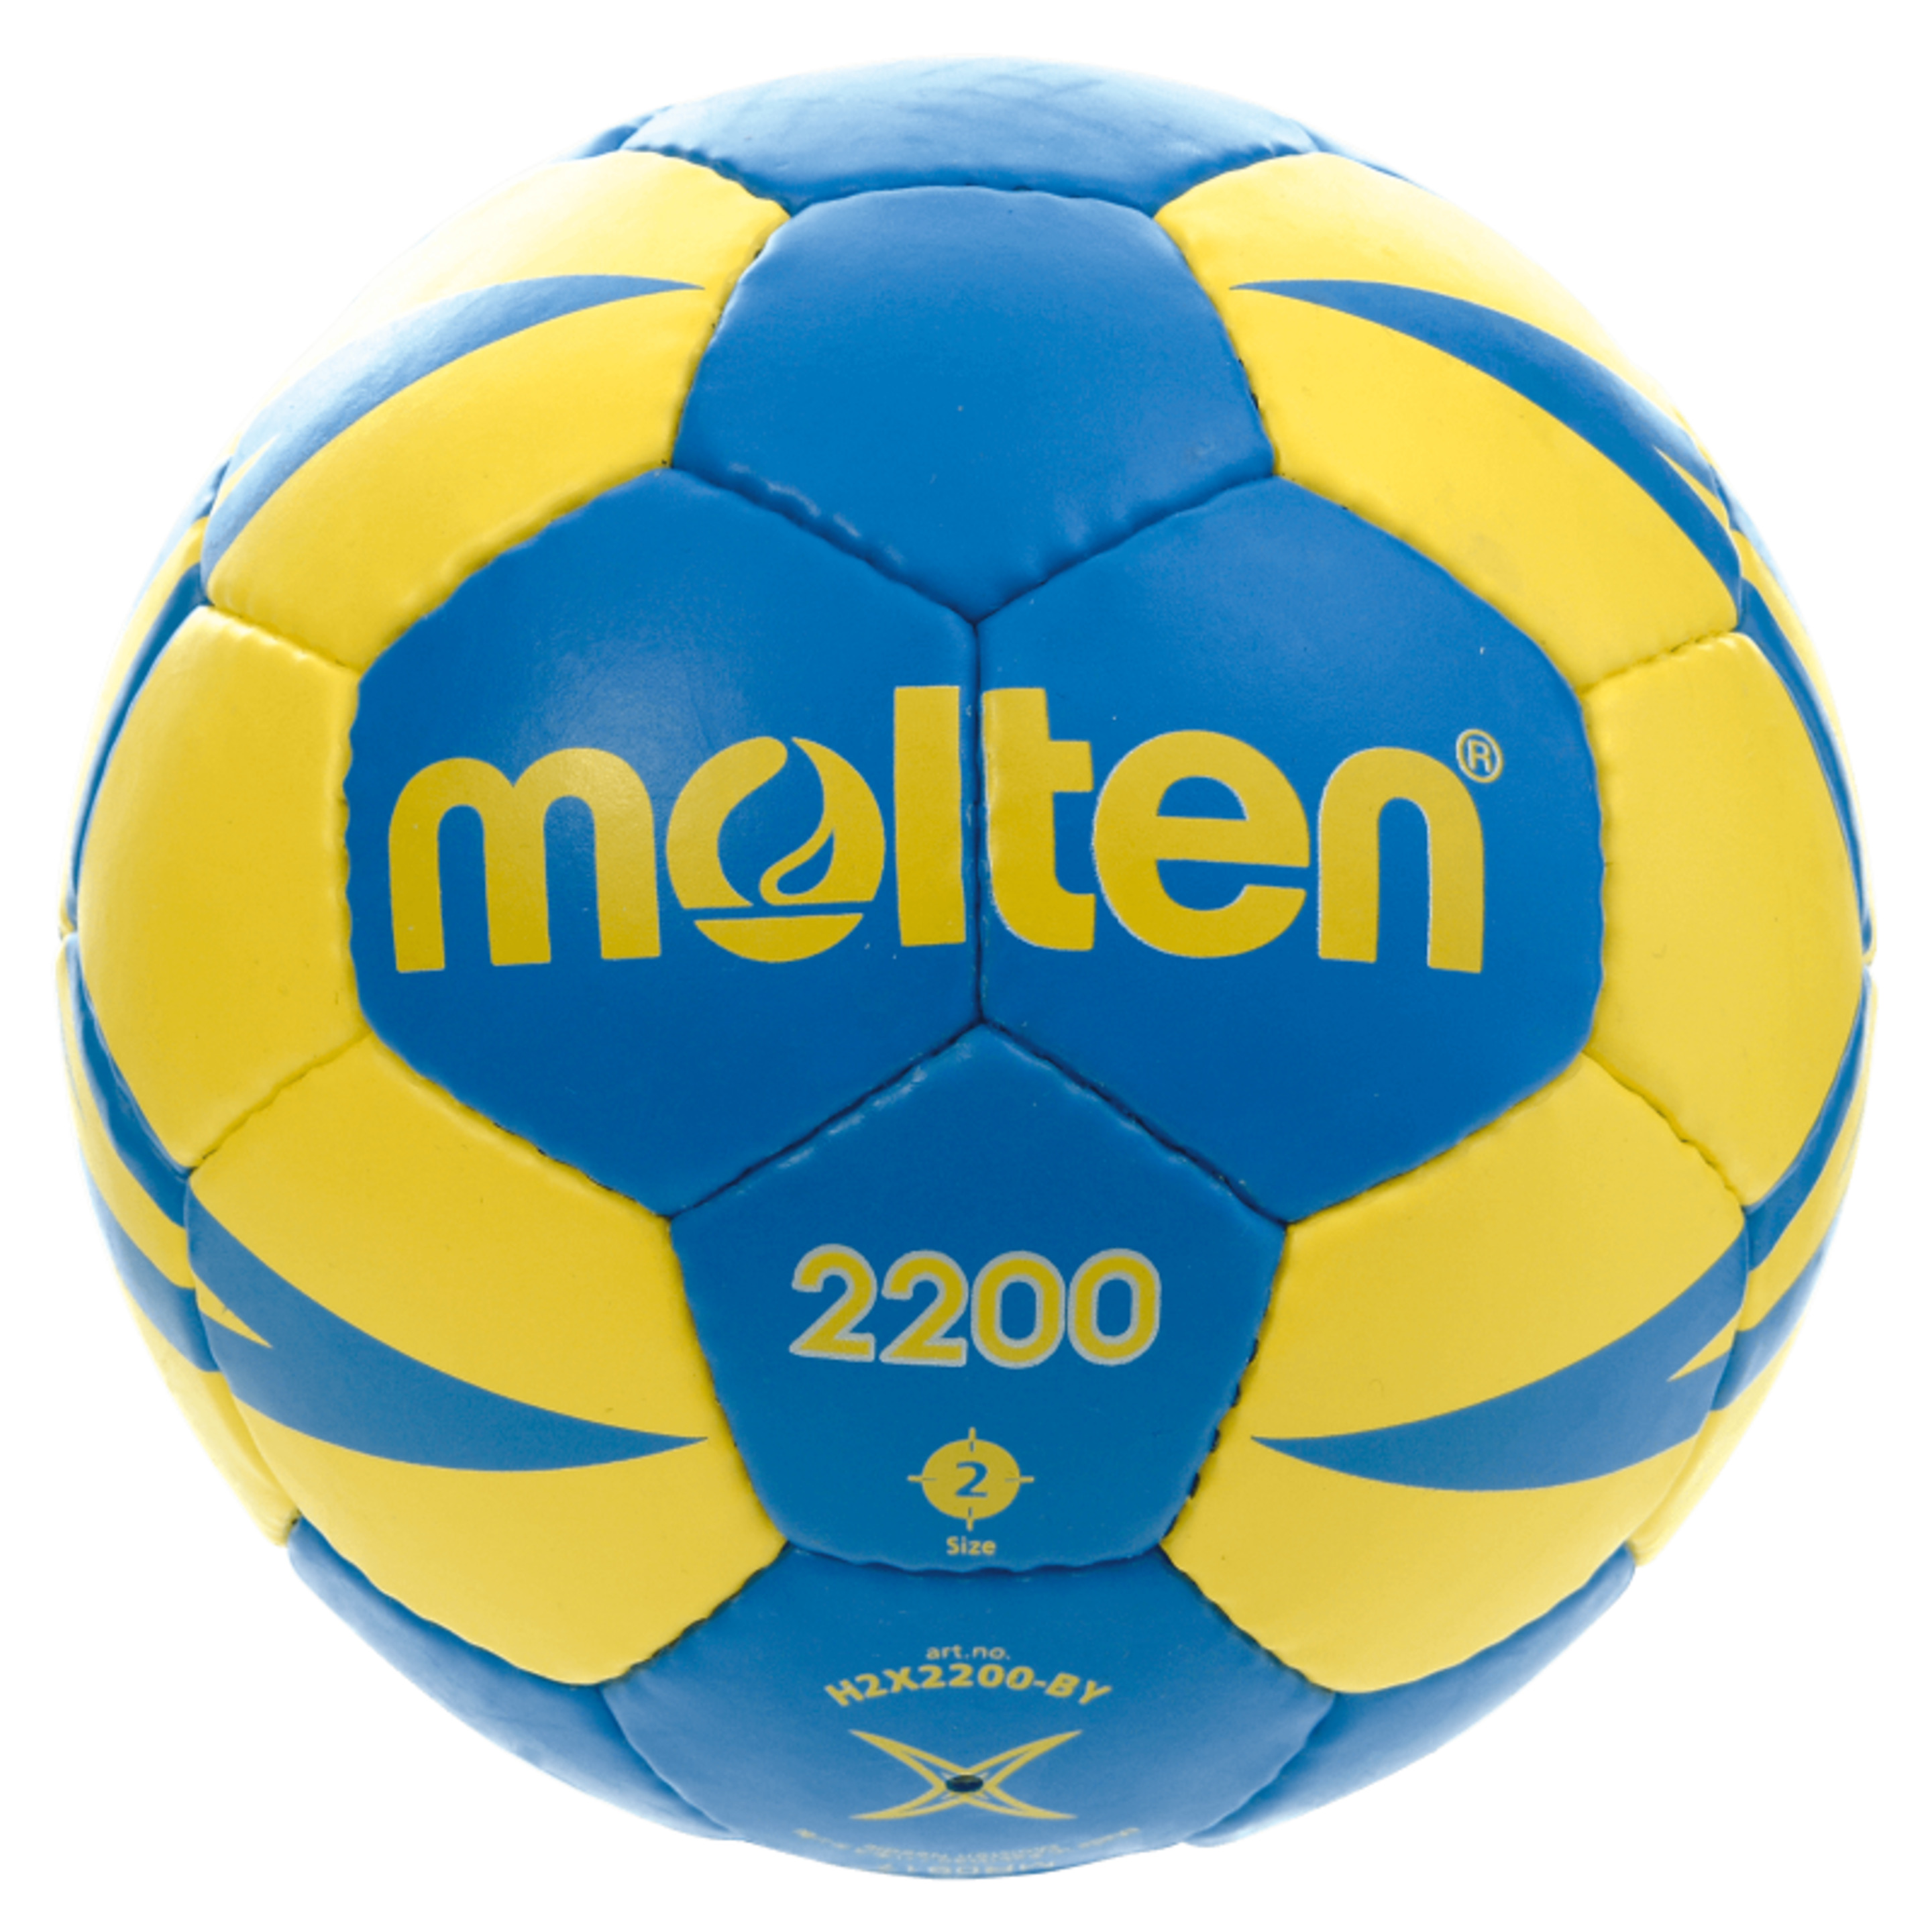 Balón Molten H2x2200